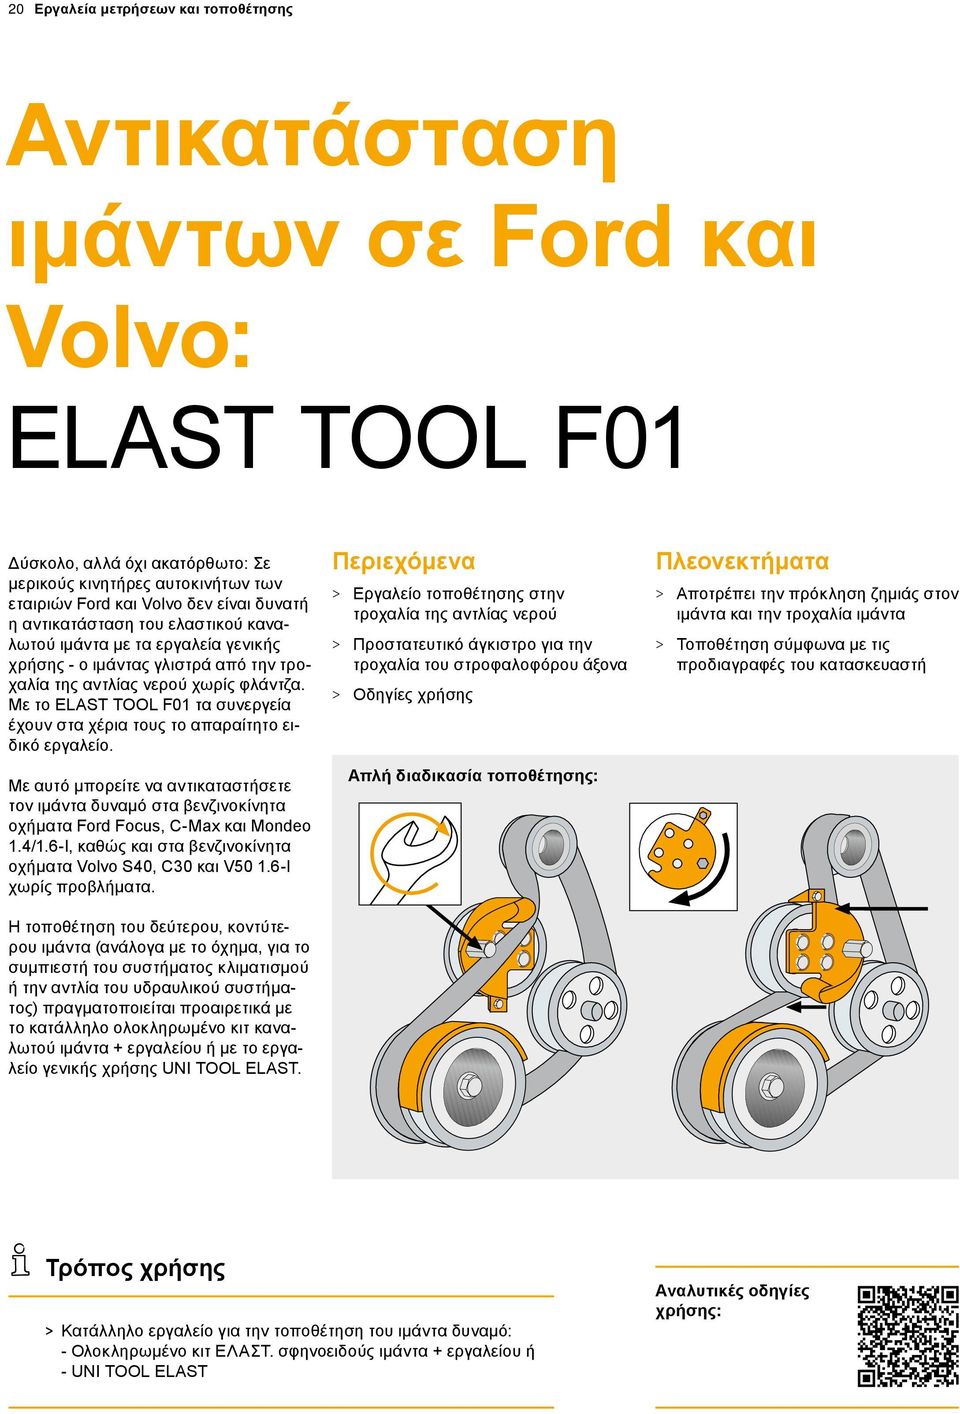 Με το ELAST TOOL F01 τα συνεργεία έχουν στα χέρια τους το απαραίτητο ειδικό εργαλείο. Με αυτό μπορείτε να αντικαταστήσετε τον ιμάντα δυναμό στα βενζινοκίνητα οχήματα Ford Focus, C-Max και Mondeo 1.